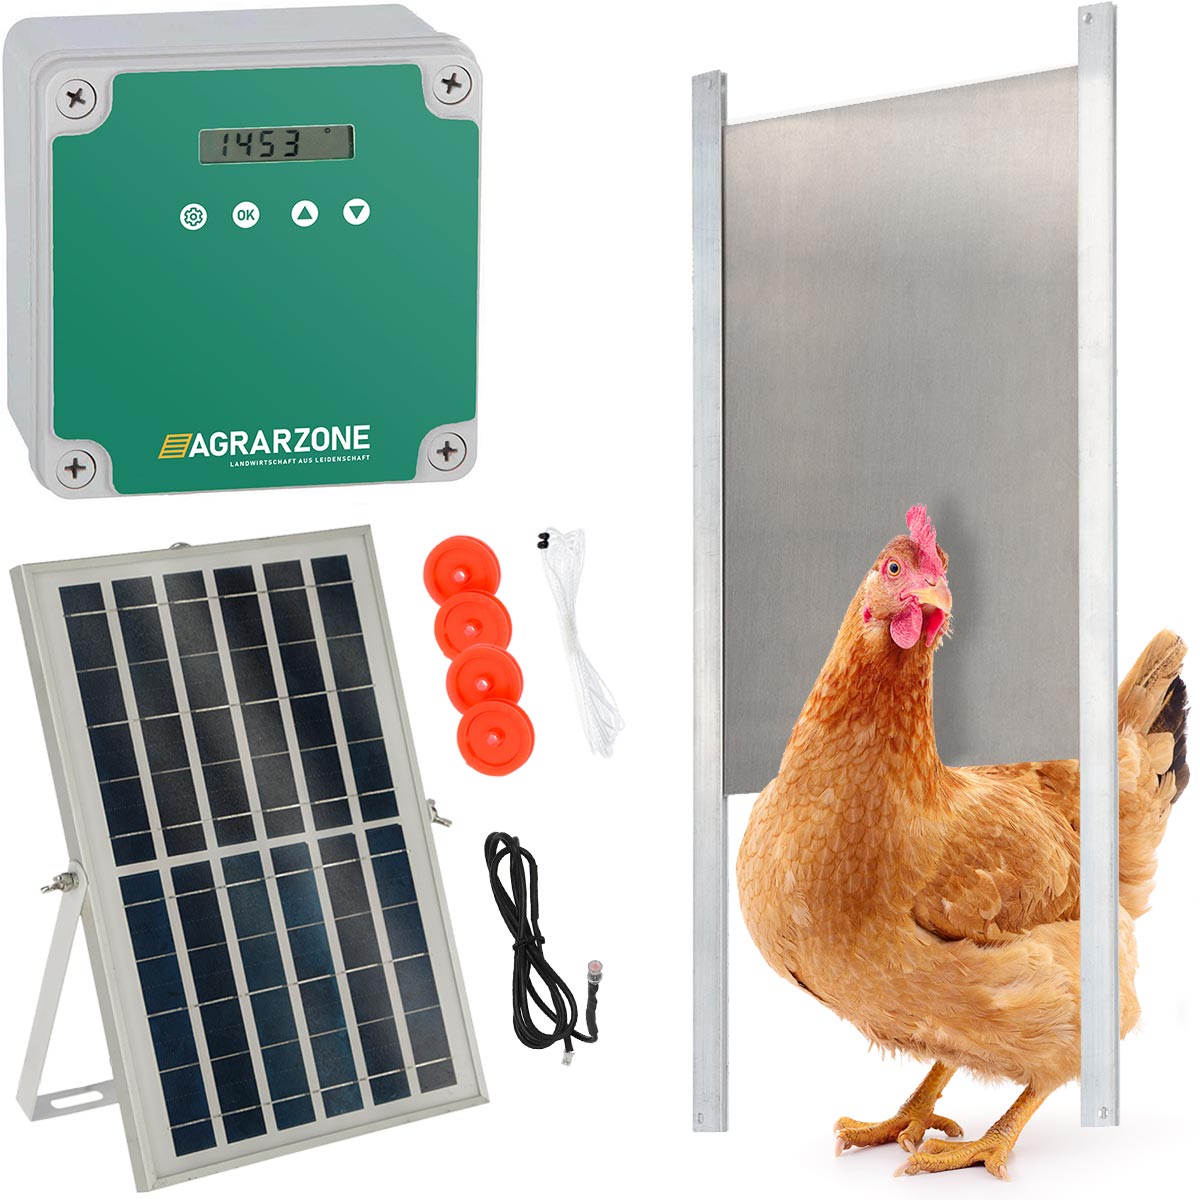 Agrarzone Porta automatica per pollaio fotovoltaica